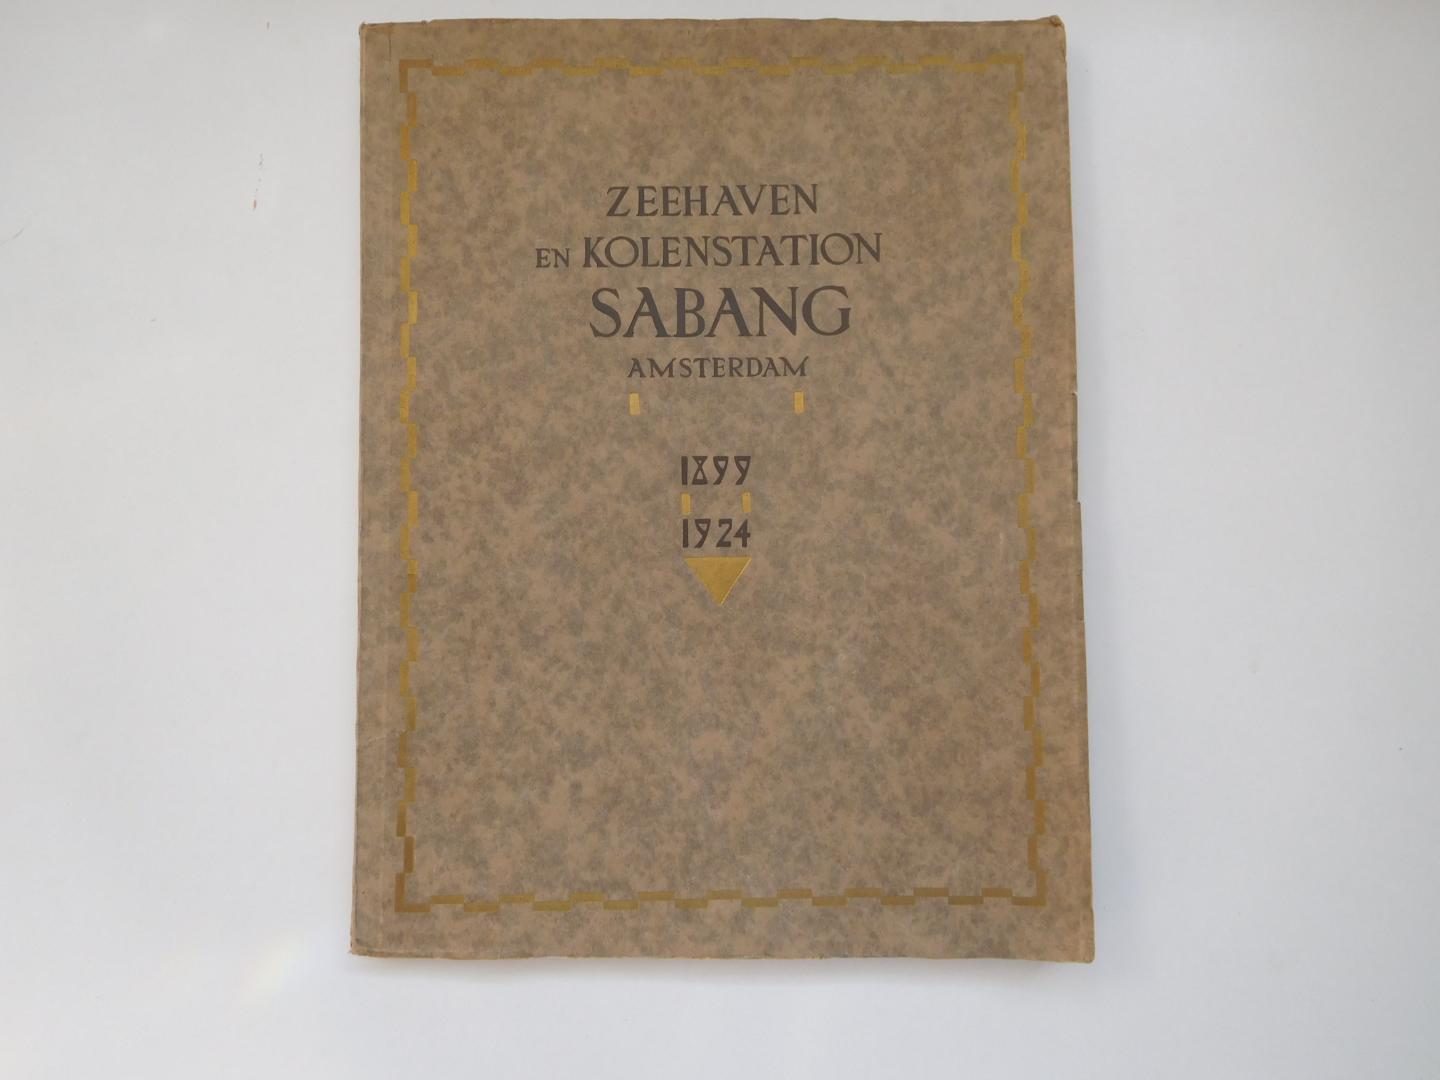 Boer, M. G. de - Zeehaven en kolenstation Sabang 1899-1924